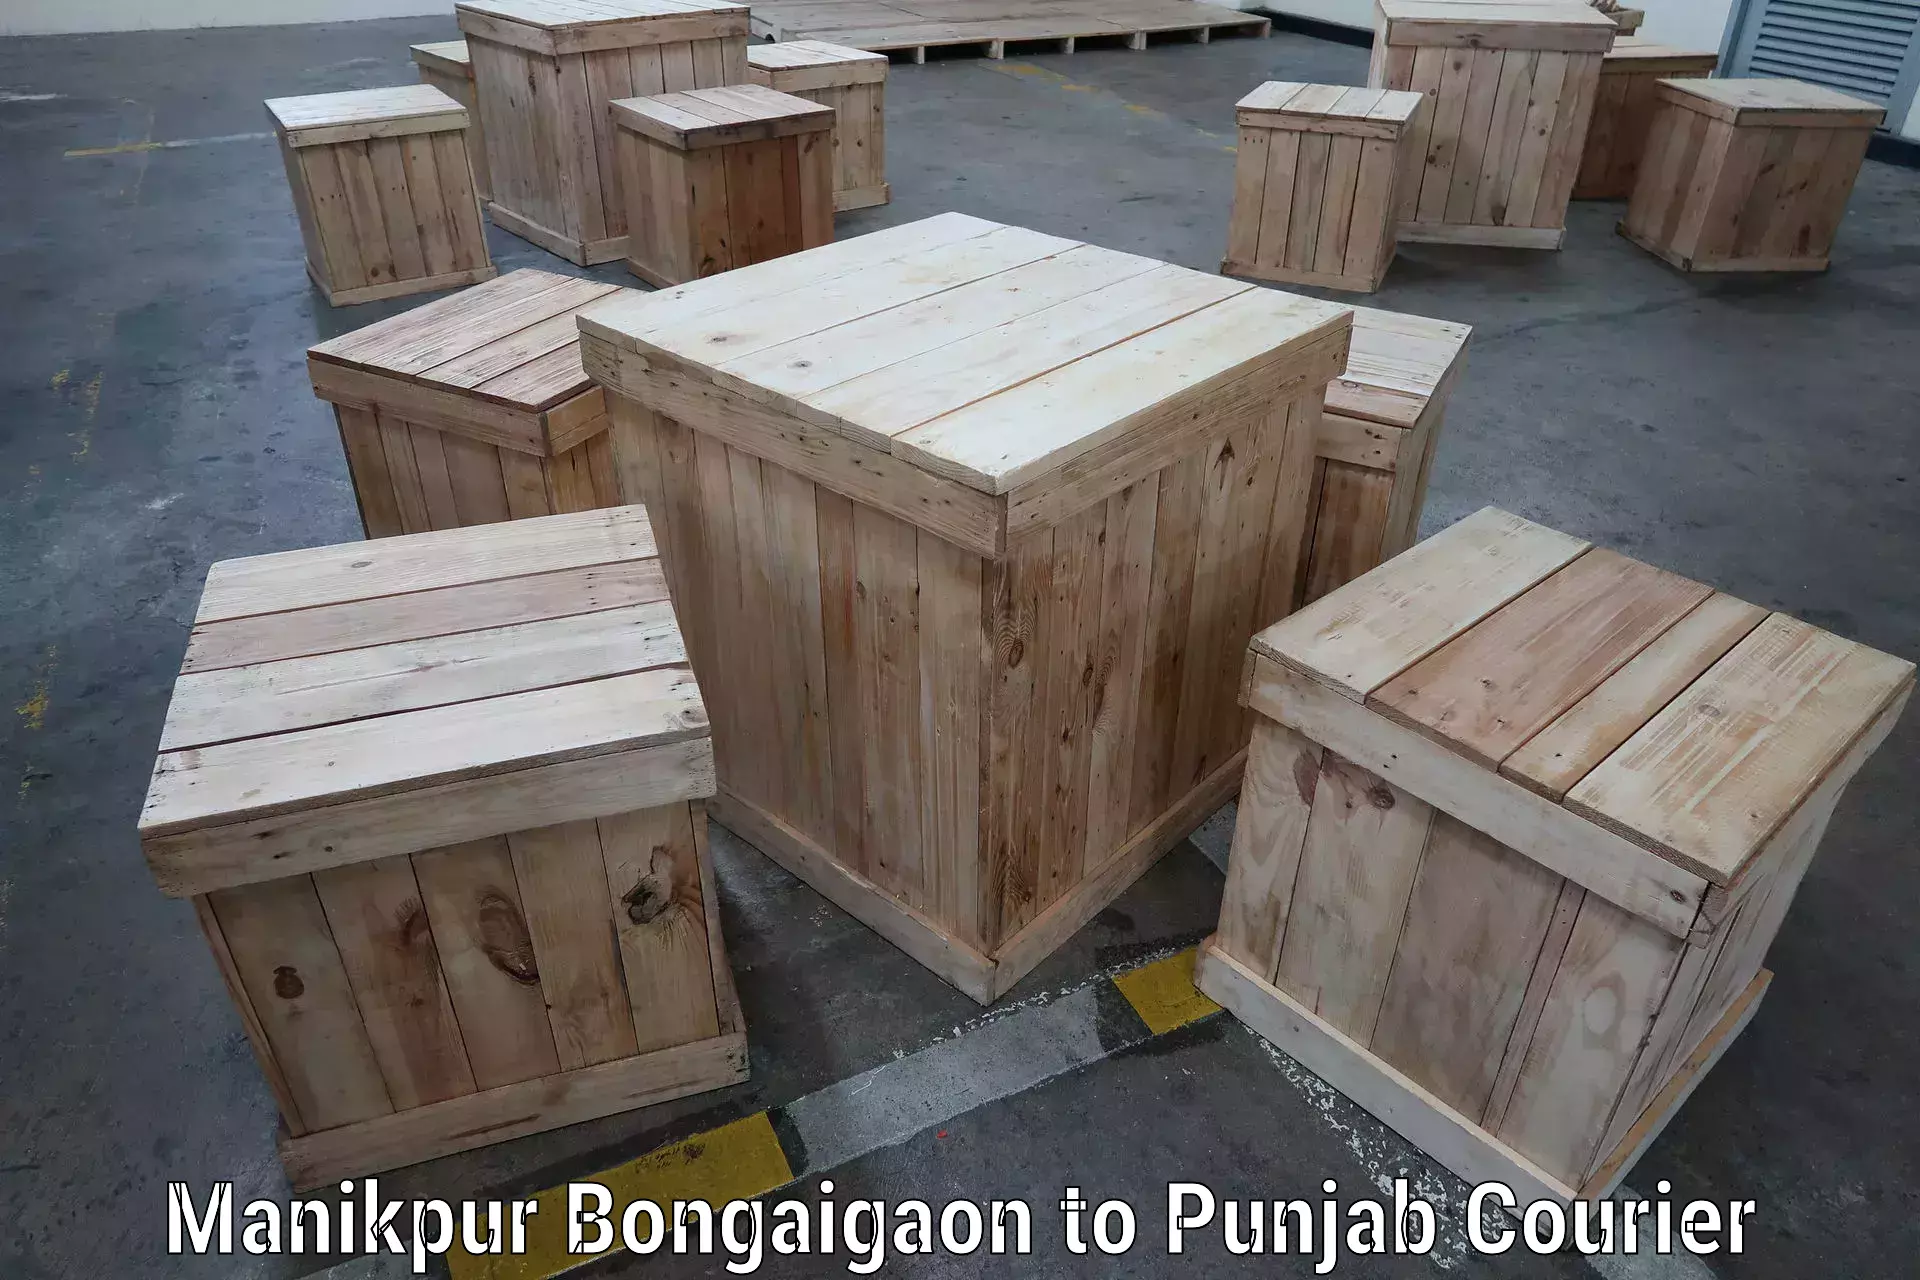 Tailored shipping plans in Manikpur Bongaigaon to Punjab